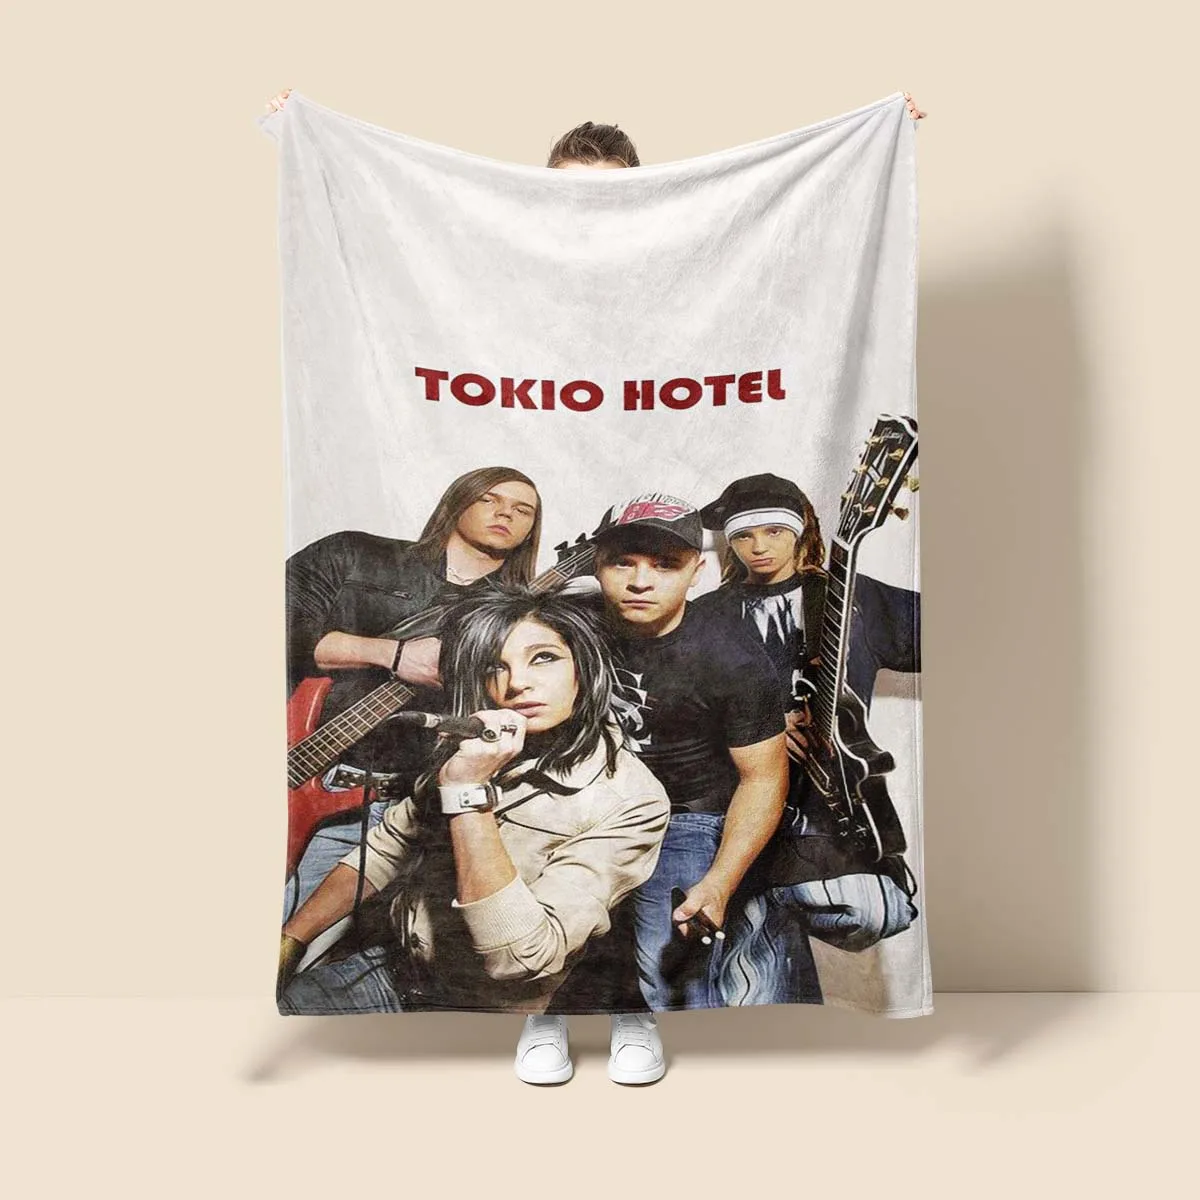 

Супермягкие Пледы из микрофибры с музыкальной группой, покрывало для кровати в отеле Токио, декоративное теплое одеяло для кемпинга и пикника